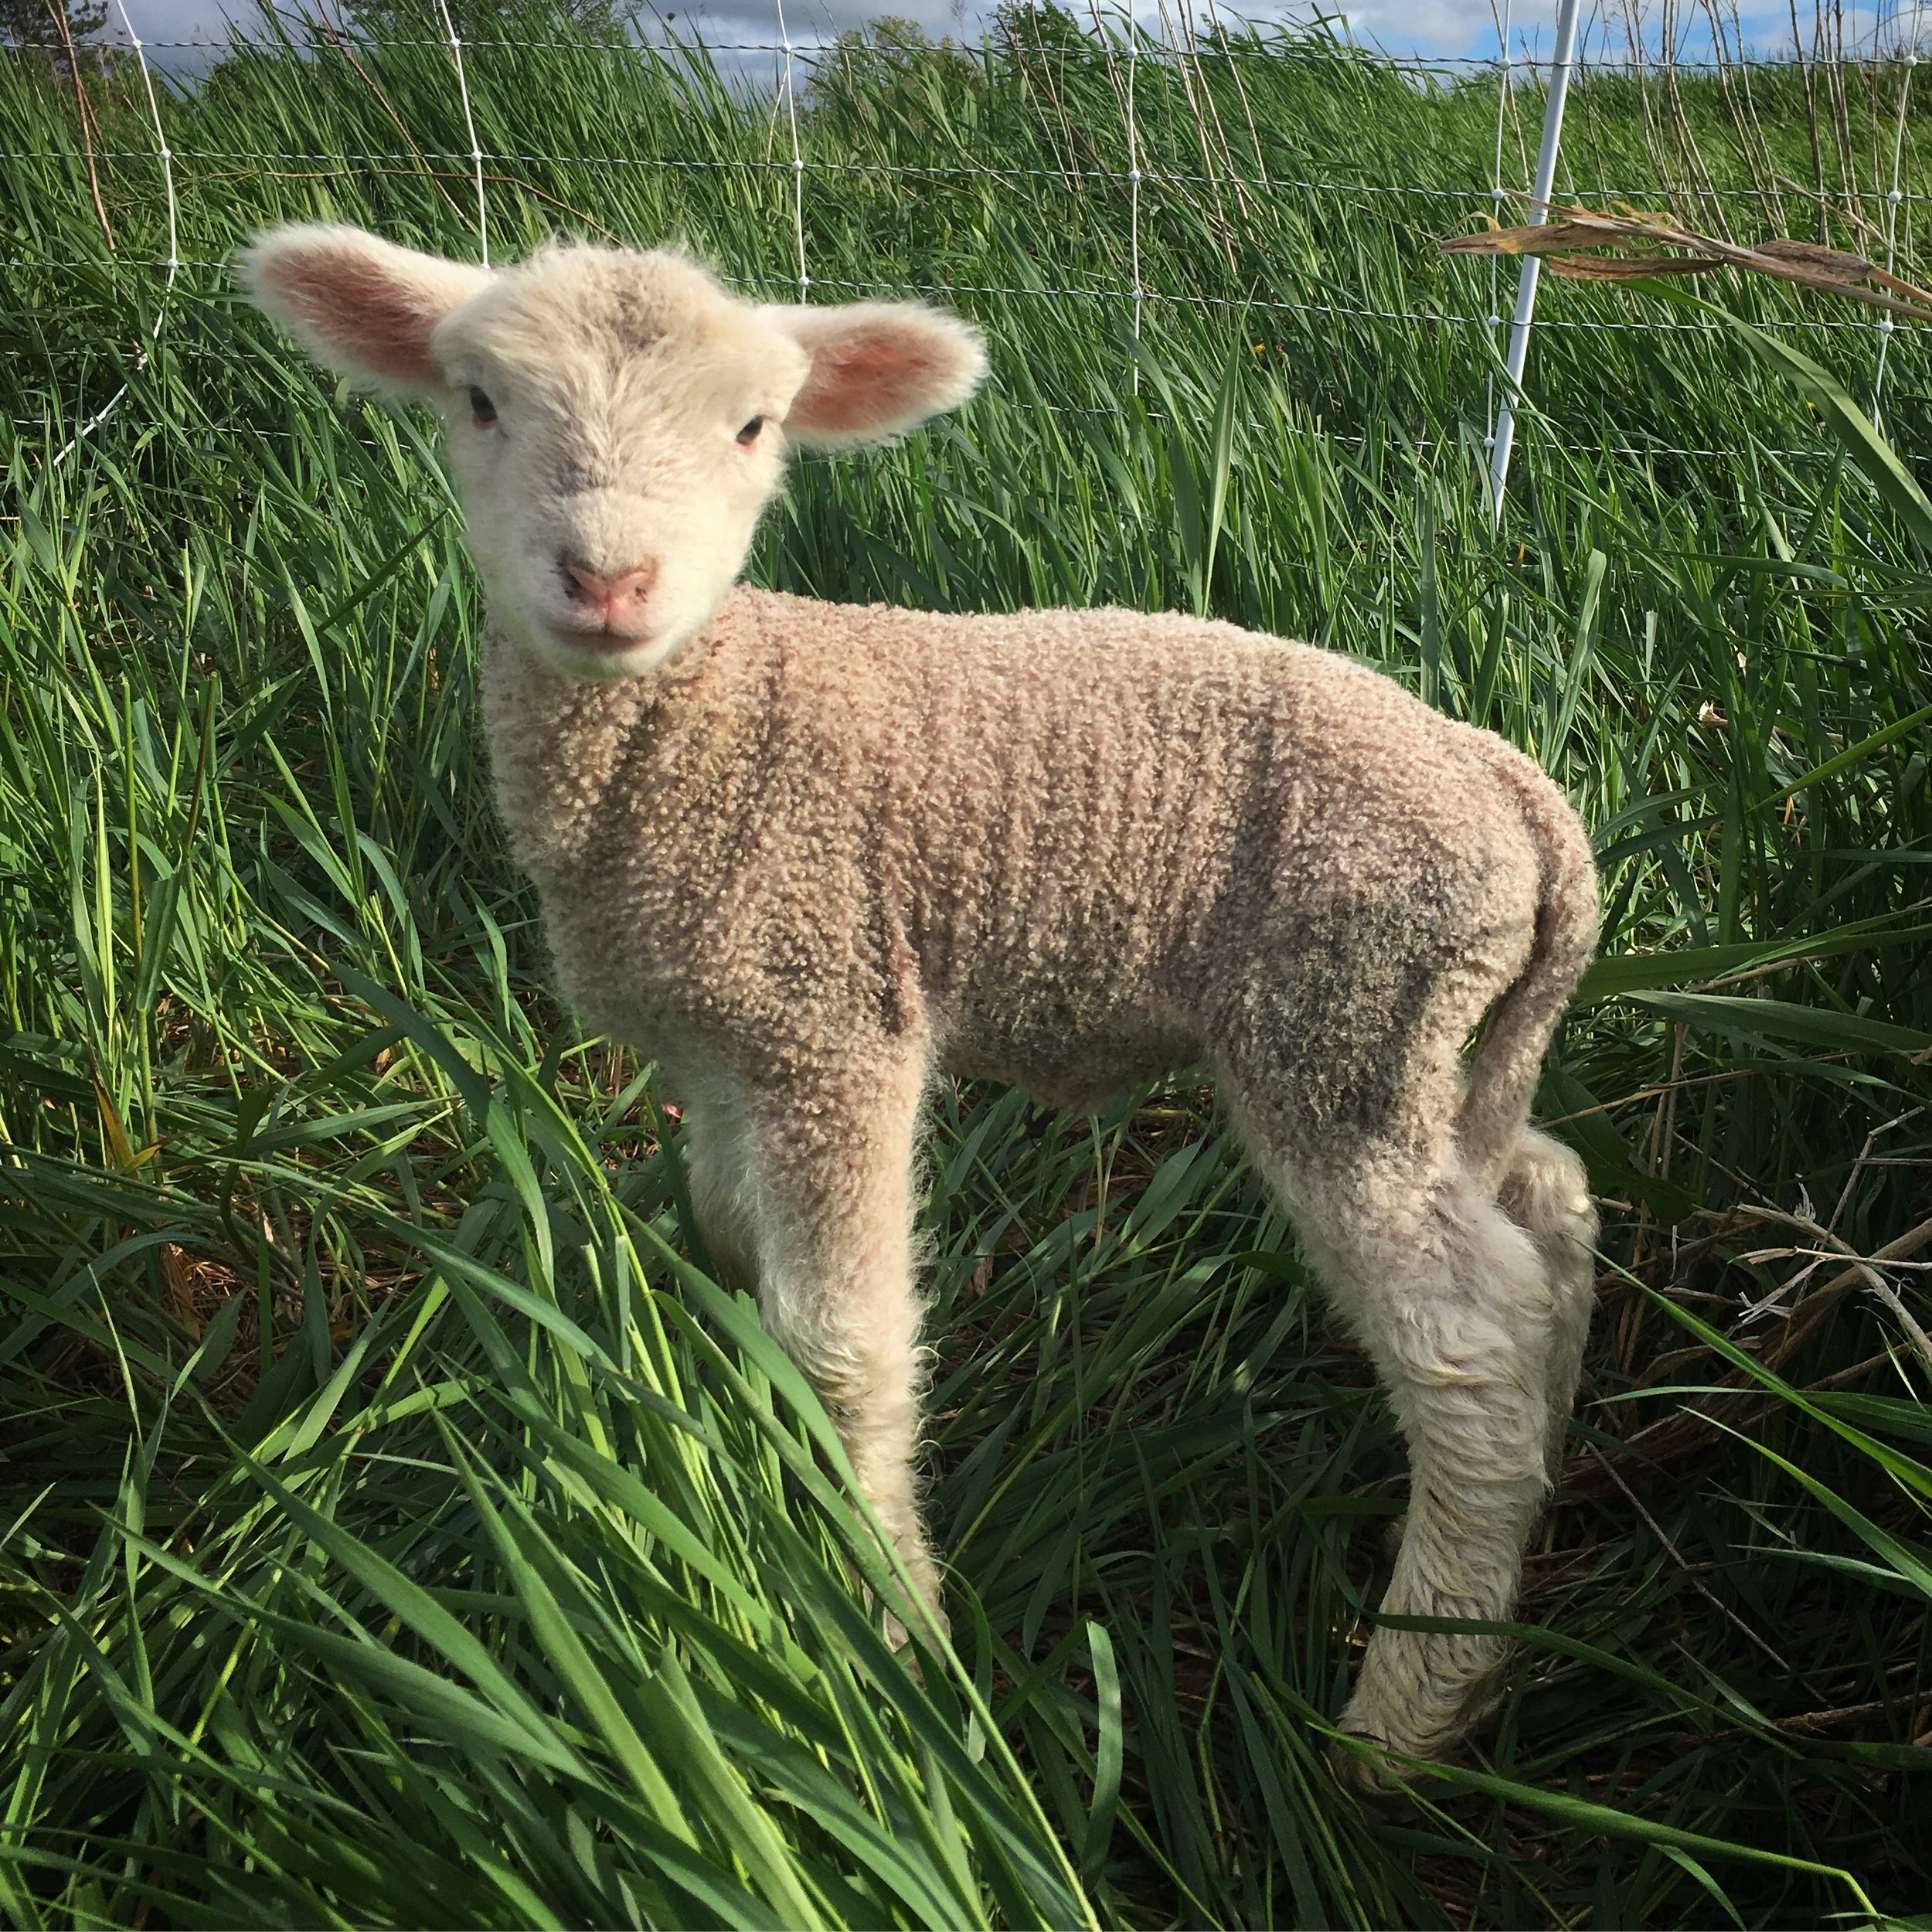 sheep - little lamb.JPG